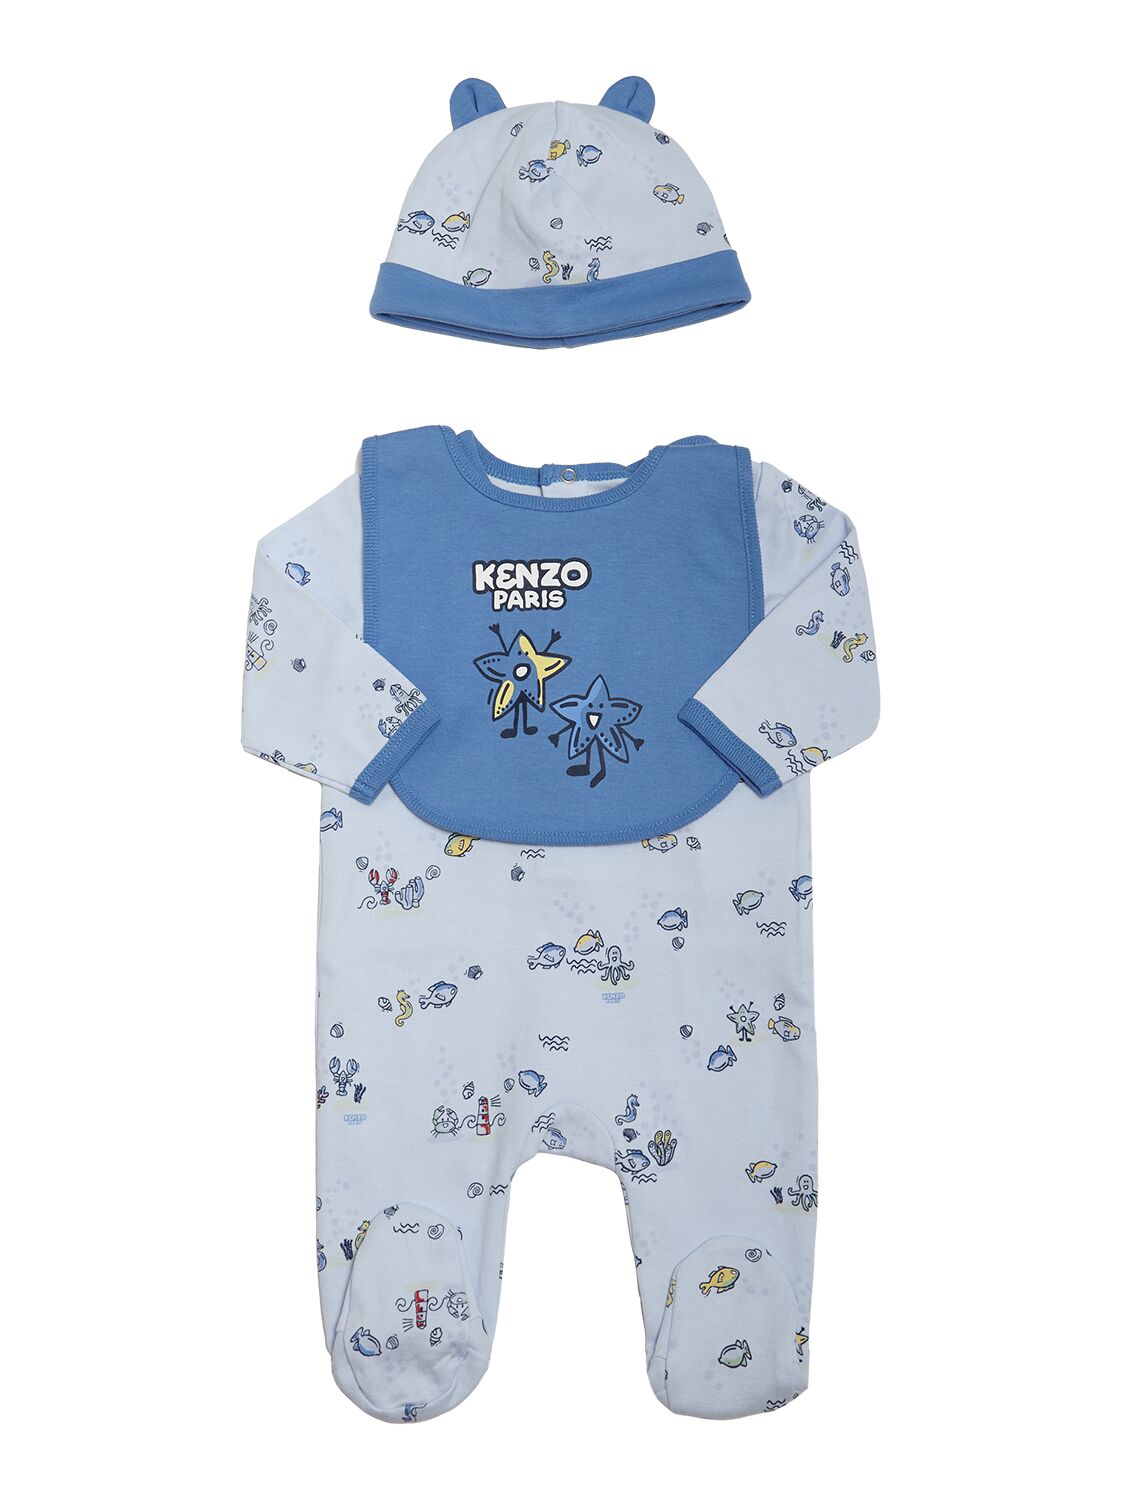 Kenzo Babies' Cotton Romper, Hat & Bib In Blue